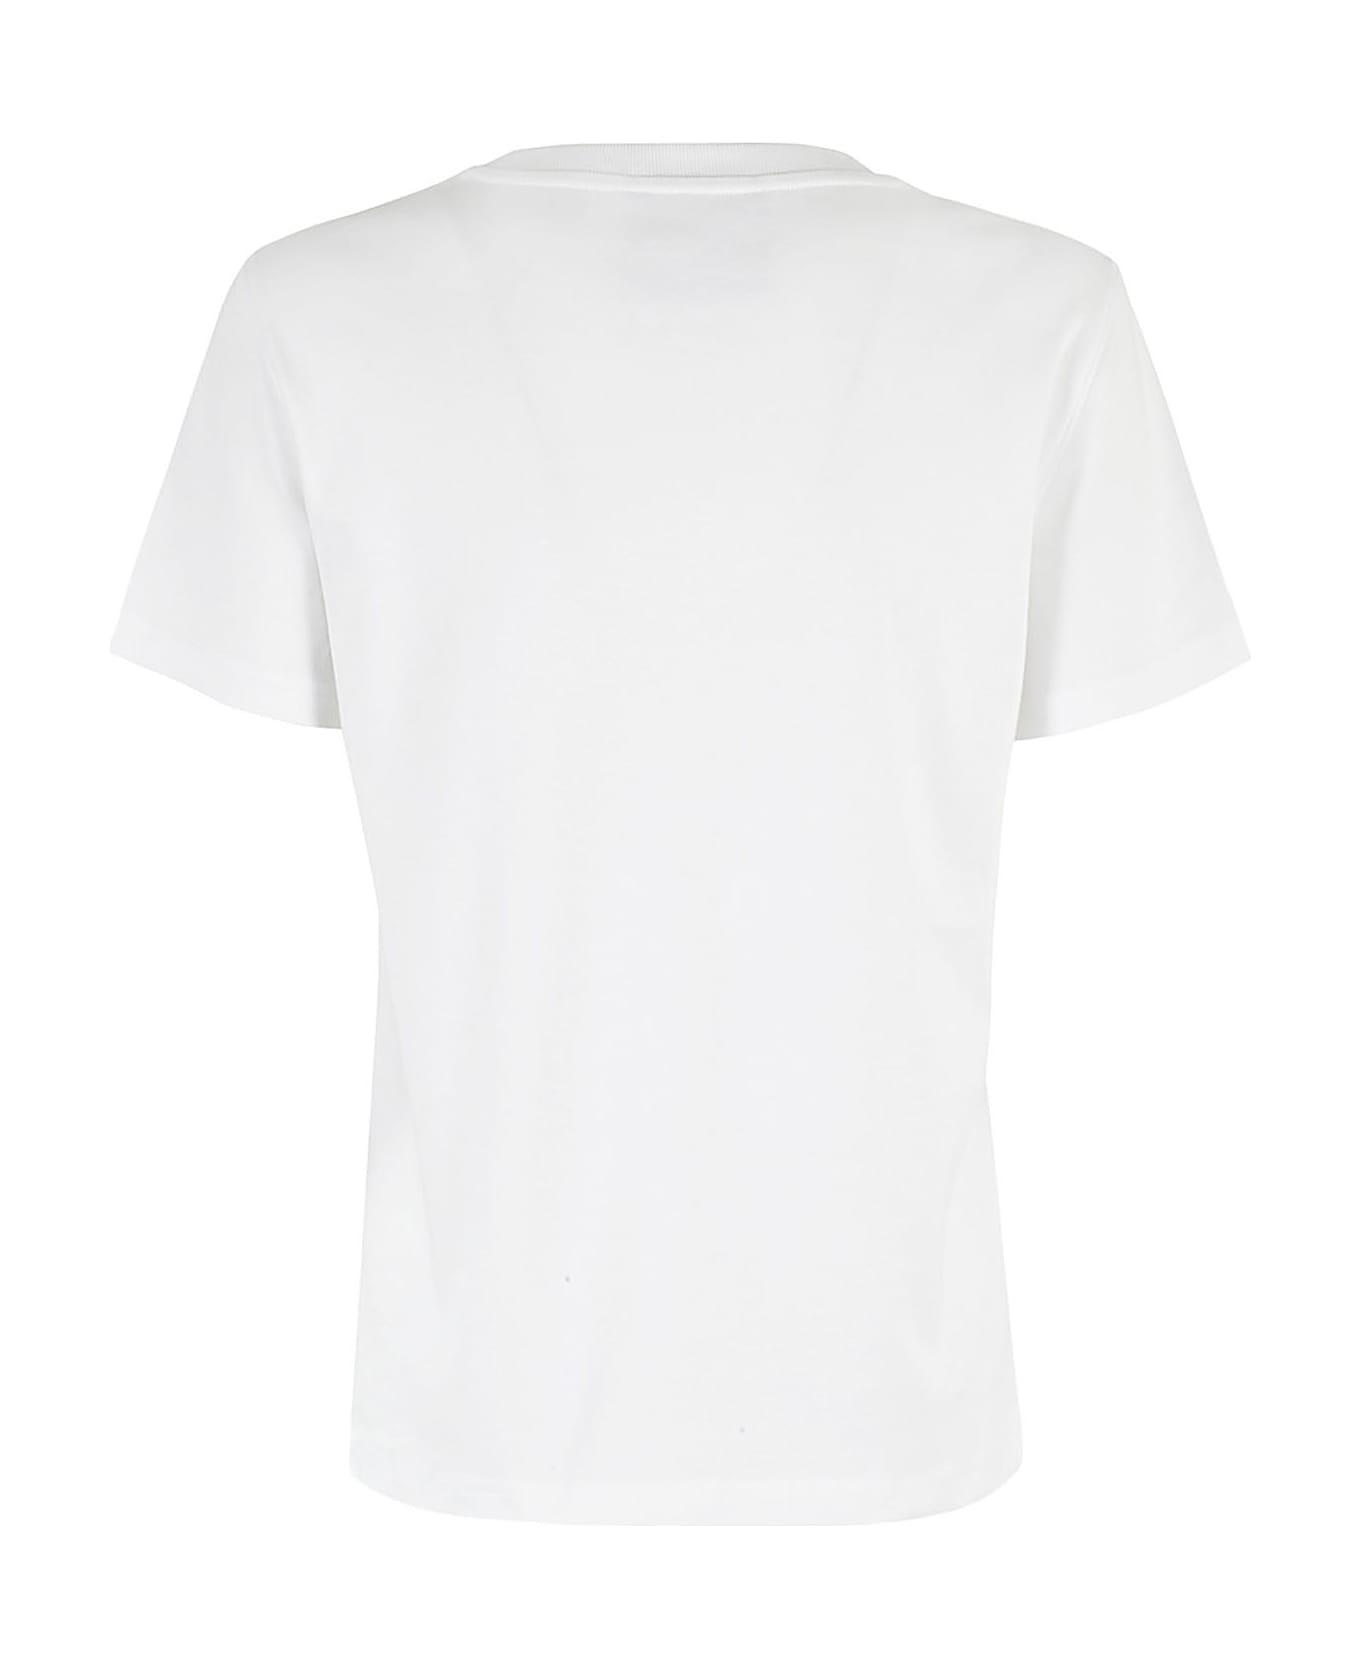 Moschino Interlock Di Cotone - Fantasia Bianco Tシャツ